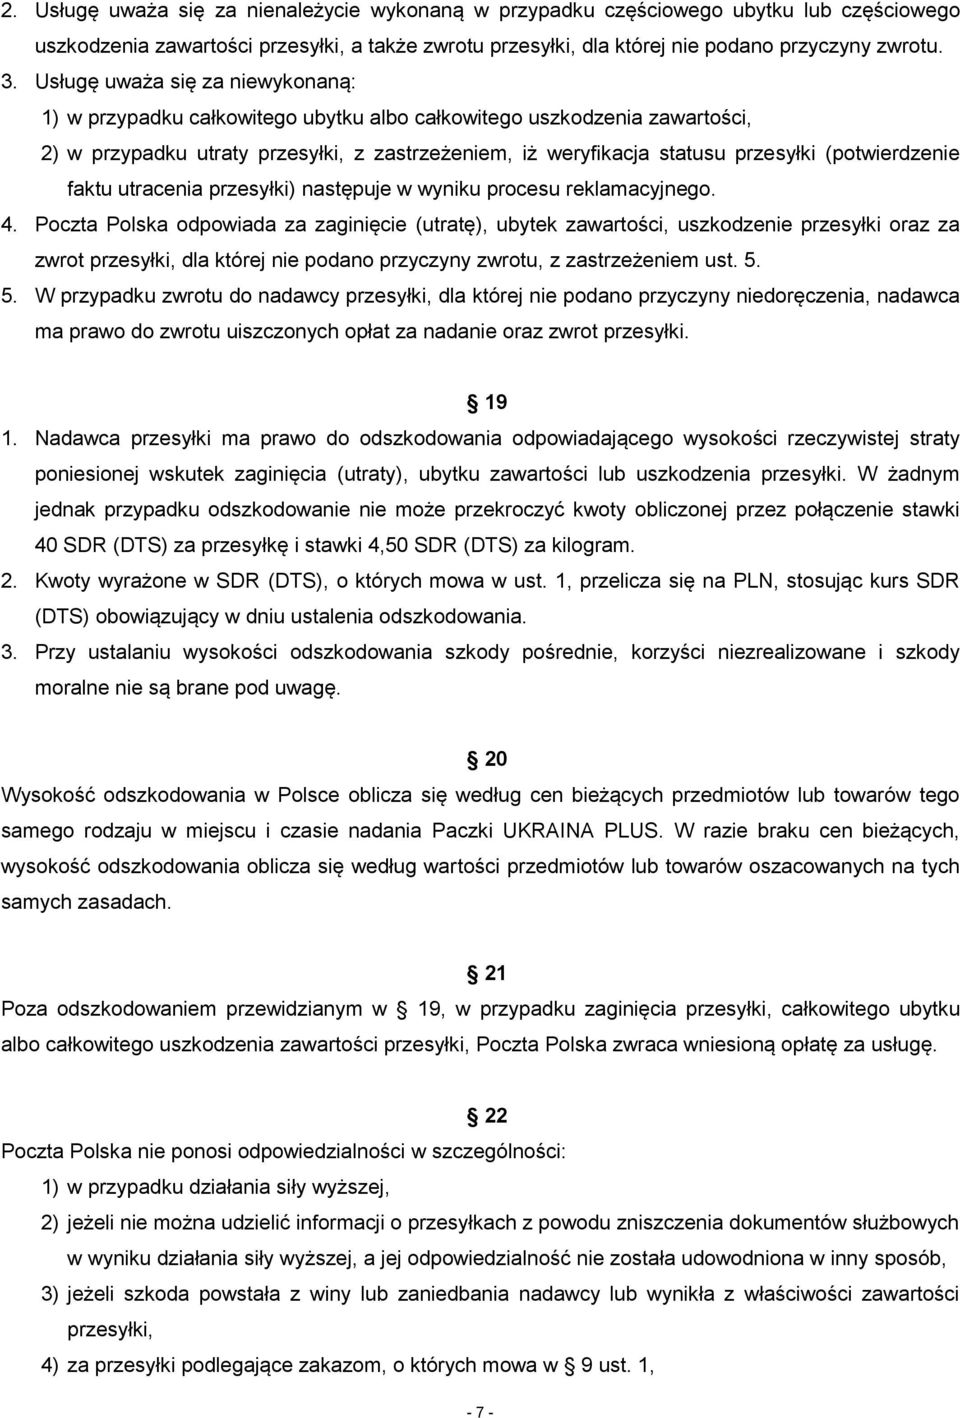 Regulamin świadczenia niepowszechnej usługi pocztowej Paczka UKRAINA PLUS w  obrocie zagranicznym - PDF Darmowe pobieranie